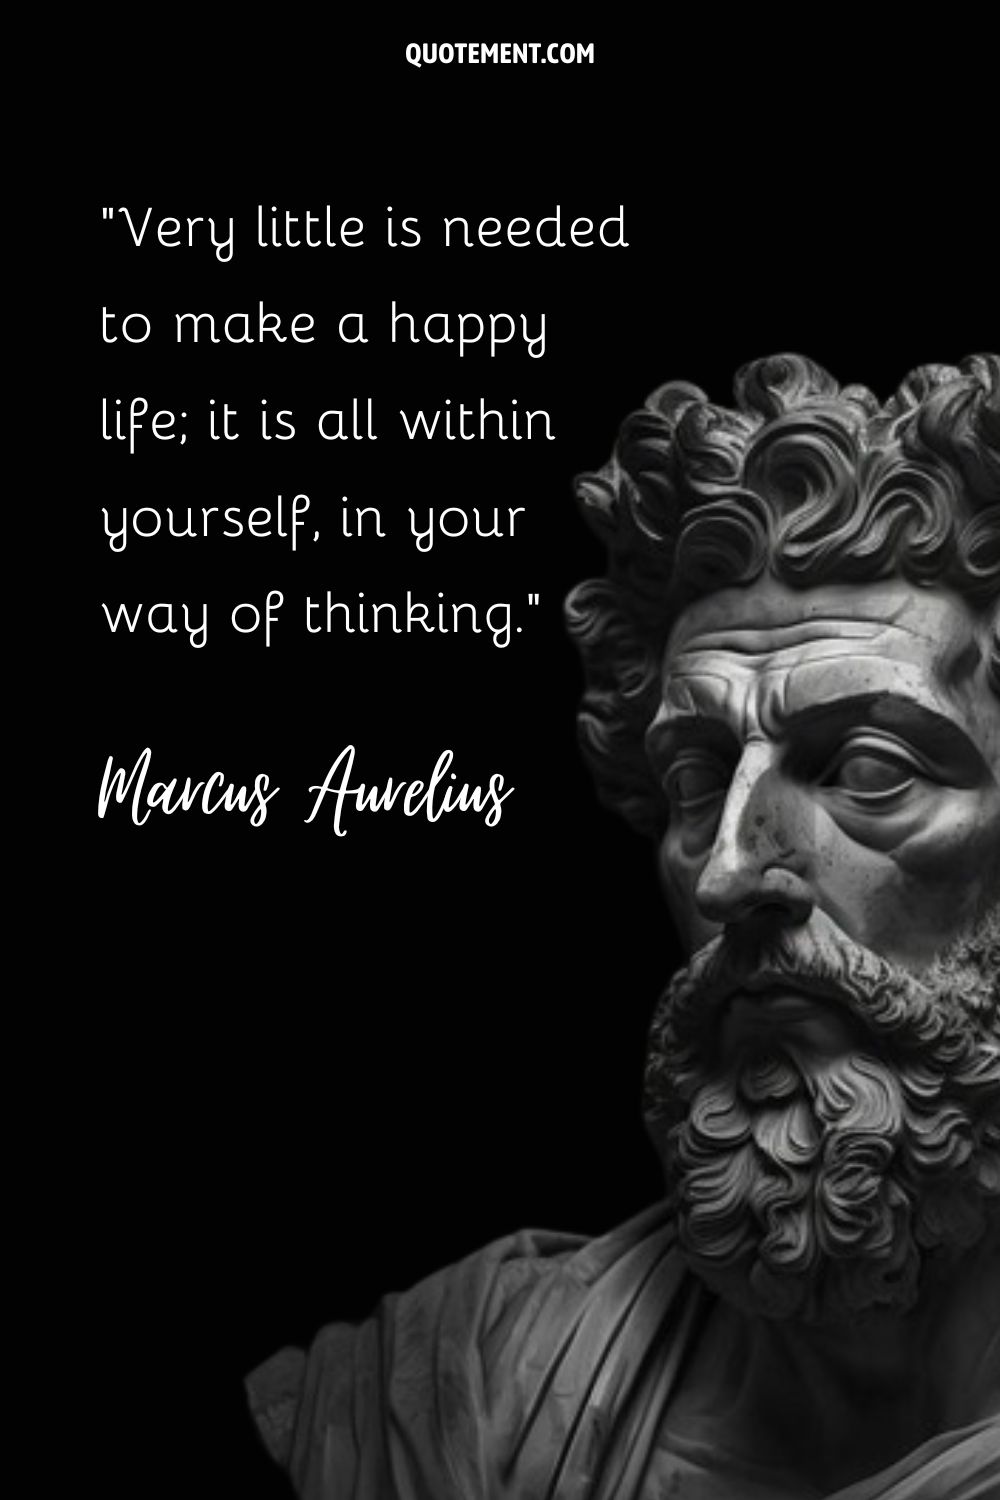 Marcus Aurelius: Stoic emperor's contemplation.
